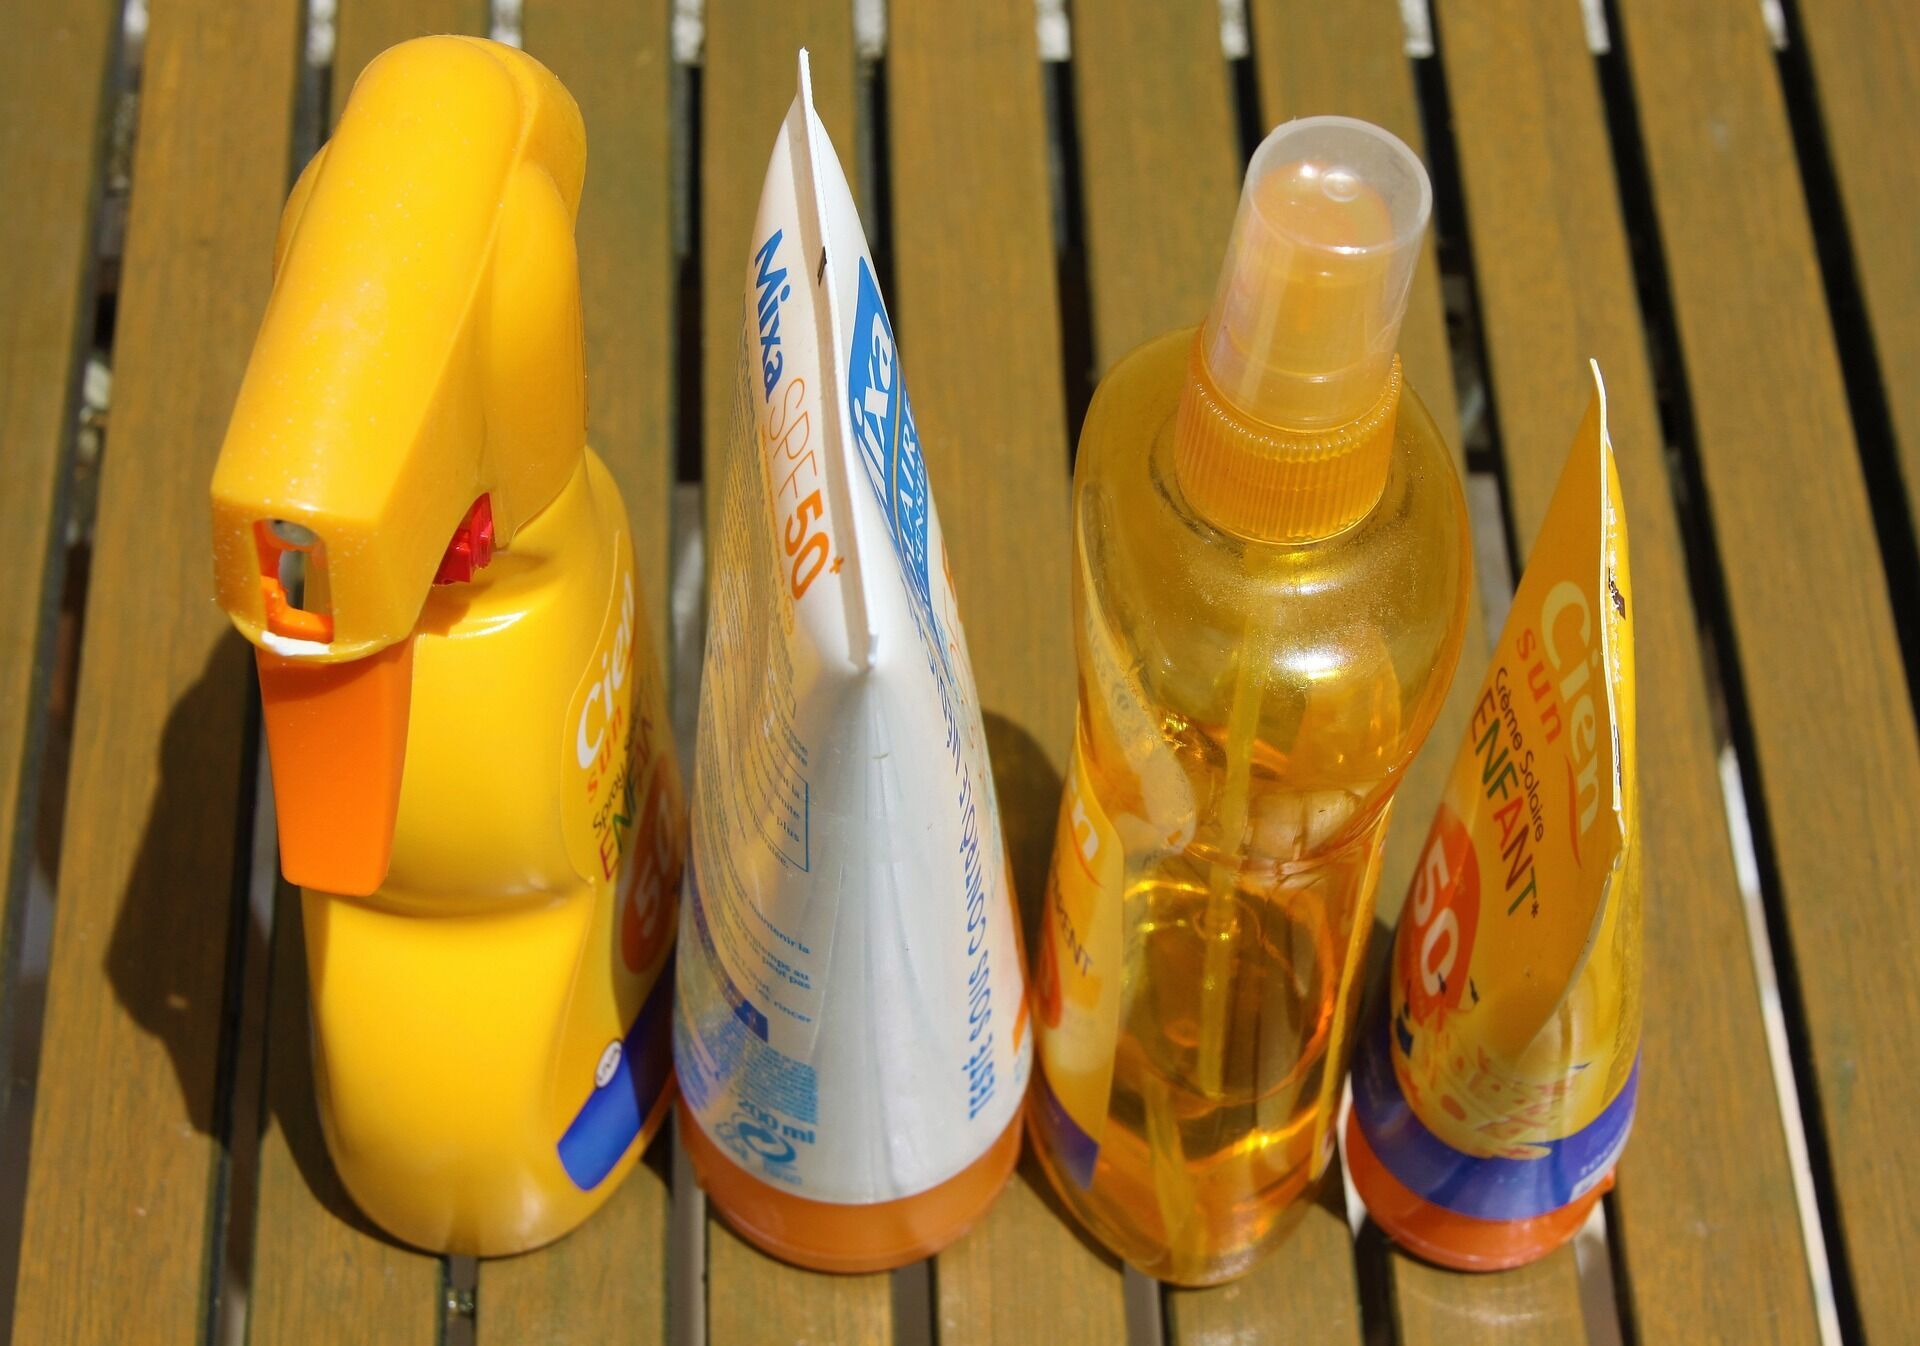 Солнцезащитный крем опасен или это панацея от всех проблем? 5 мифов о популярном косметическом средстве, которым не стоит верить